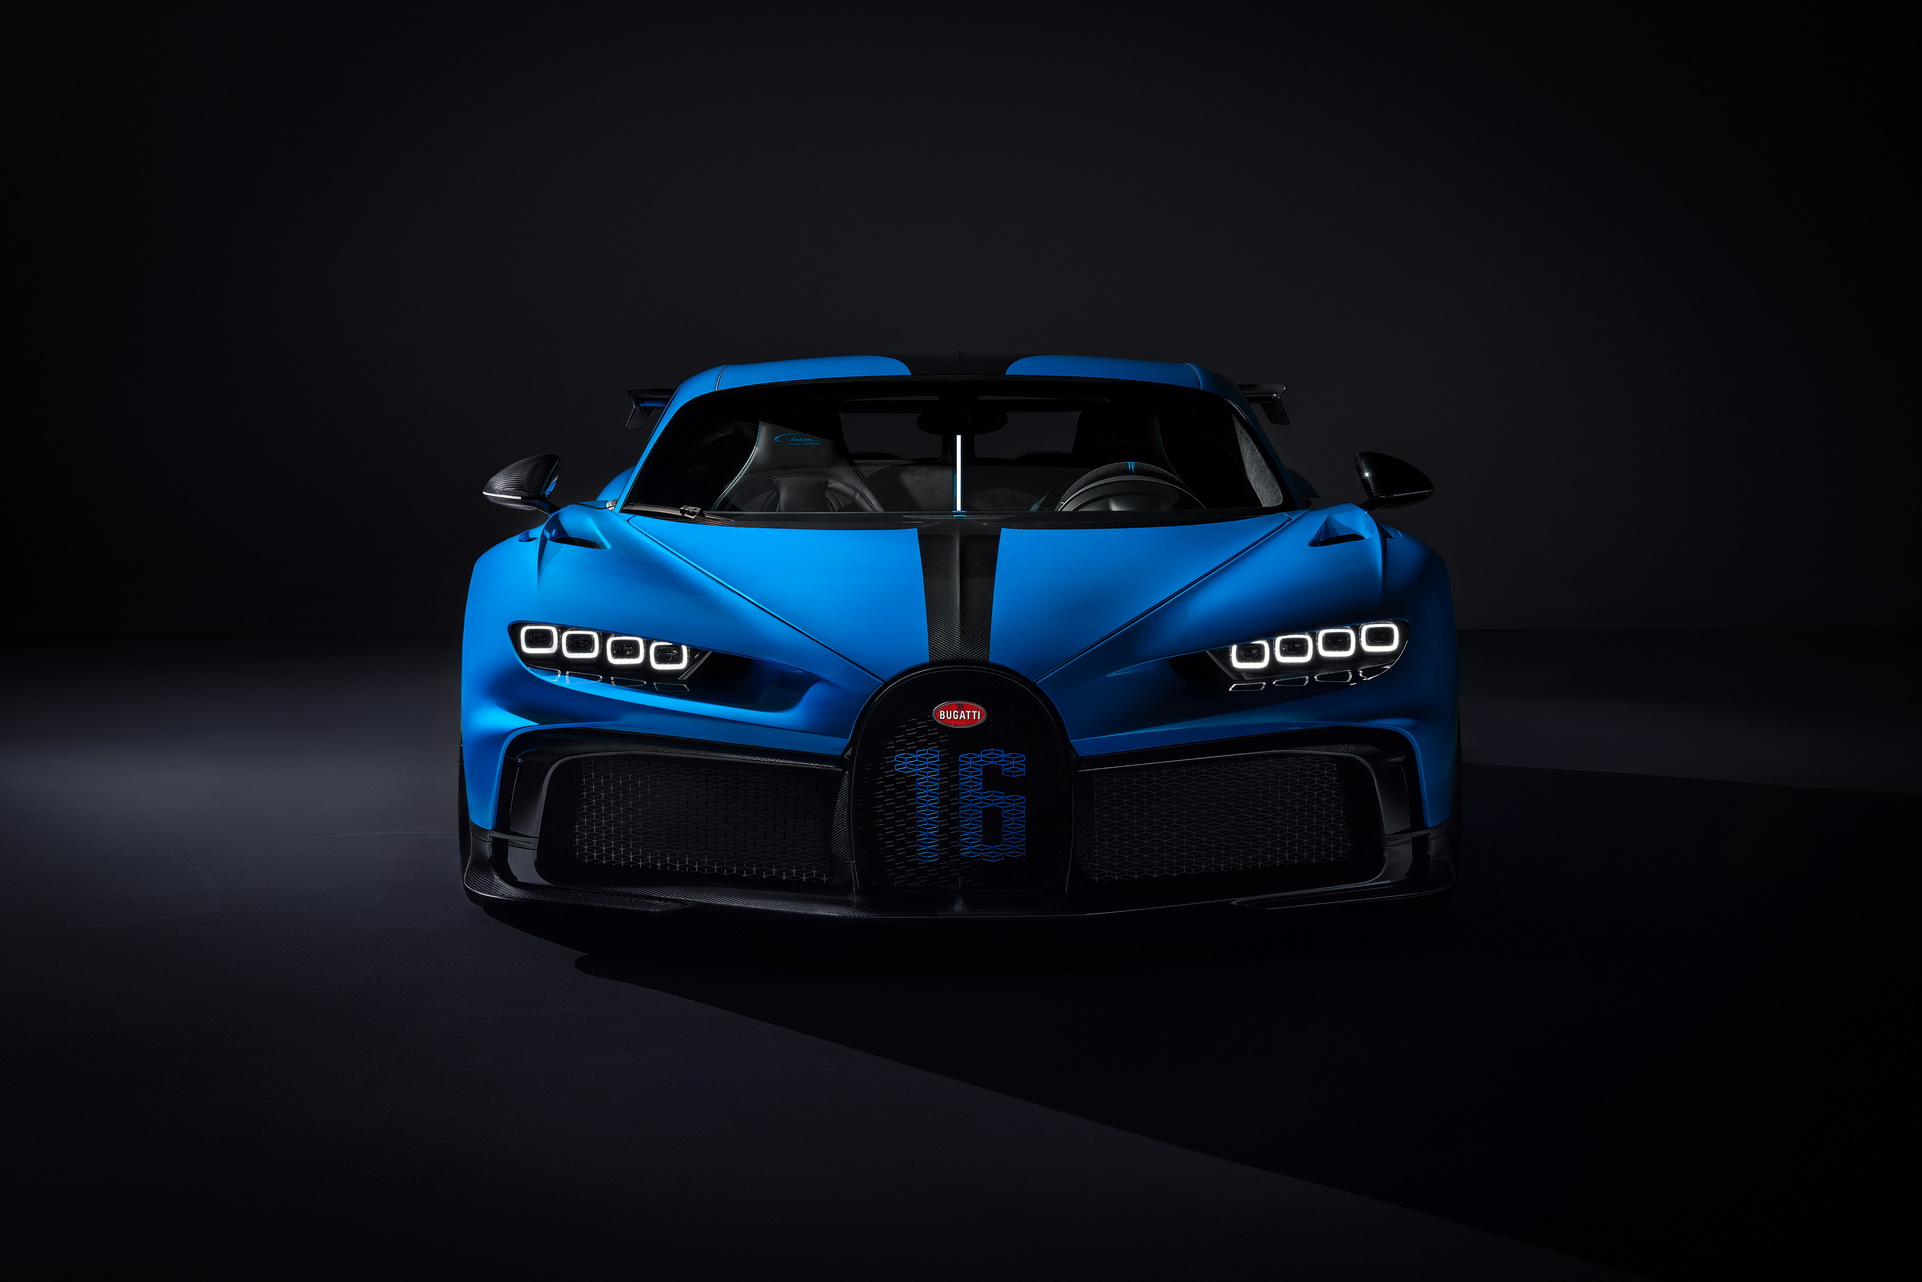 Siêu xe Bugatti Chiron Pur Sport: Hiện tại, Bugatti Chiron Pur Sport là mẫu siêu xe đắt giá hàng đầu của hãng xe này. Với công suất cực cao và cân bằng tuyệt đối, chiếc xe này hứa hẹn đem lại cho người lái cảm giác mạnh mẽ và lôi cuốn. Hãy cùng ngắm nhìn chi tiết của siêu phẩm này qua hình ảnh.